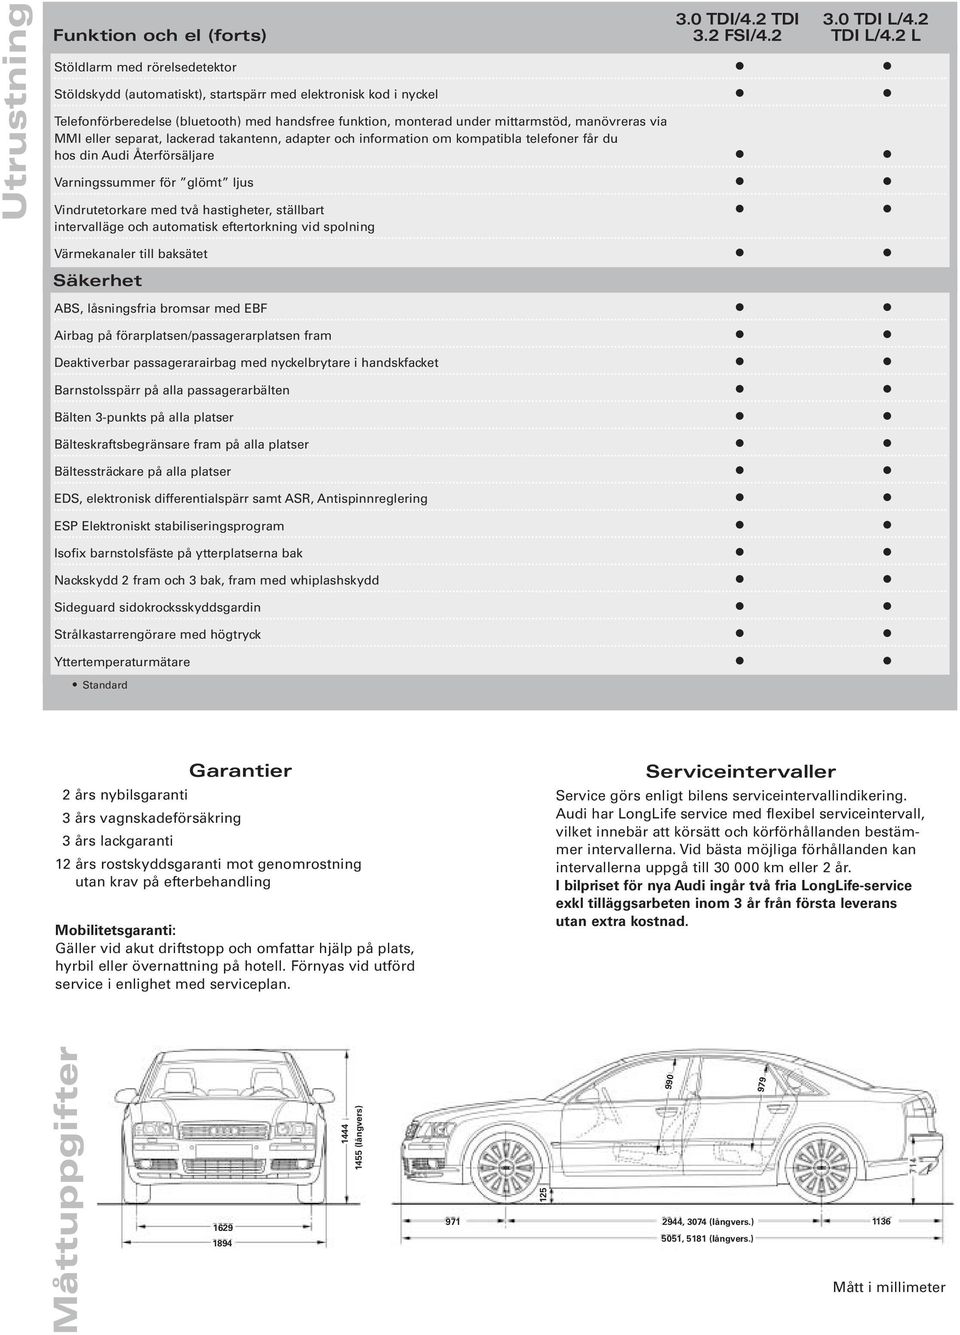 MMI eller separat, lackerad takantenn, adapter och information om kompatibla telefoner får du hos din Audi Återförsäljare Varningssummer för glömt ljus Vindrutetorkare med två hastigheter, ställbart